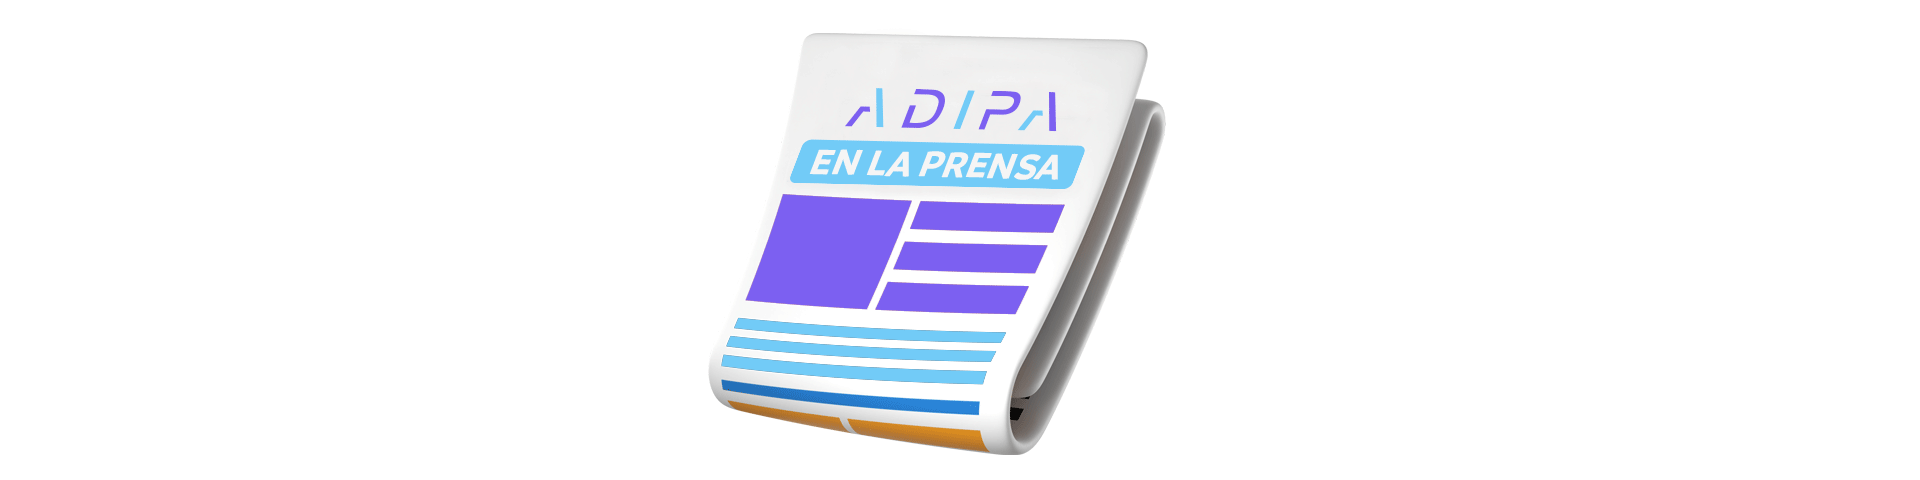 Adipa en la prensa  - ADIPA